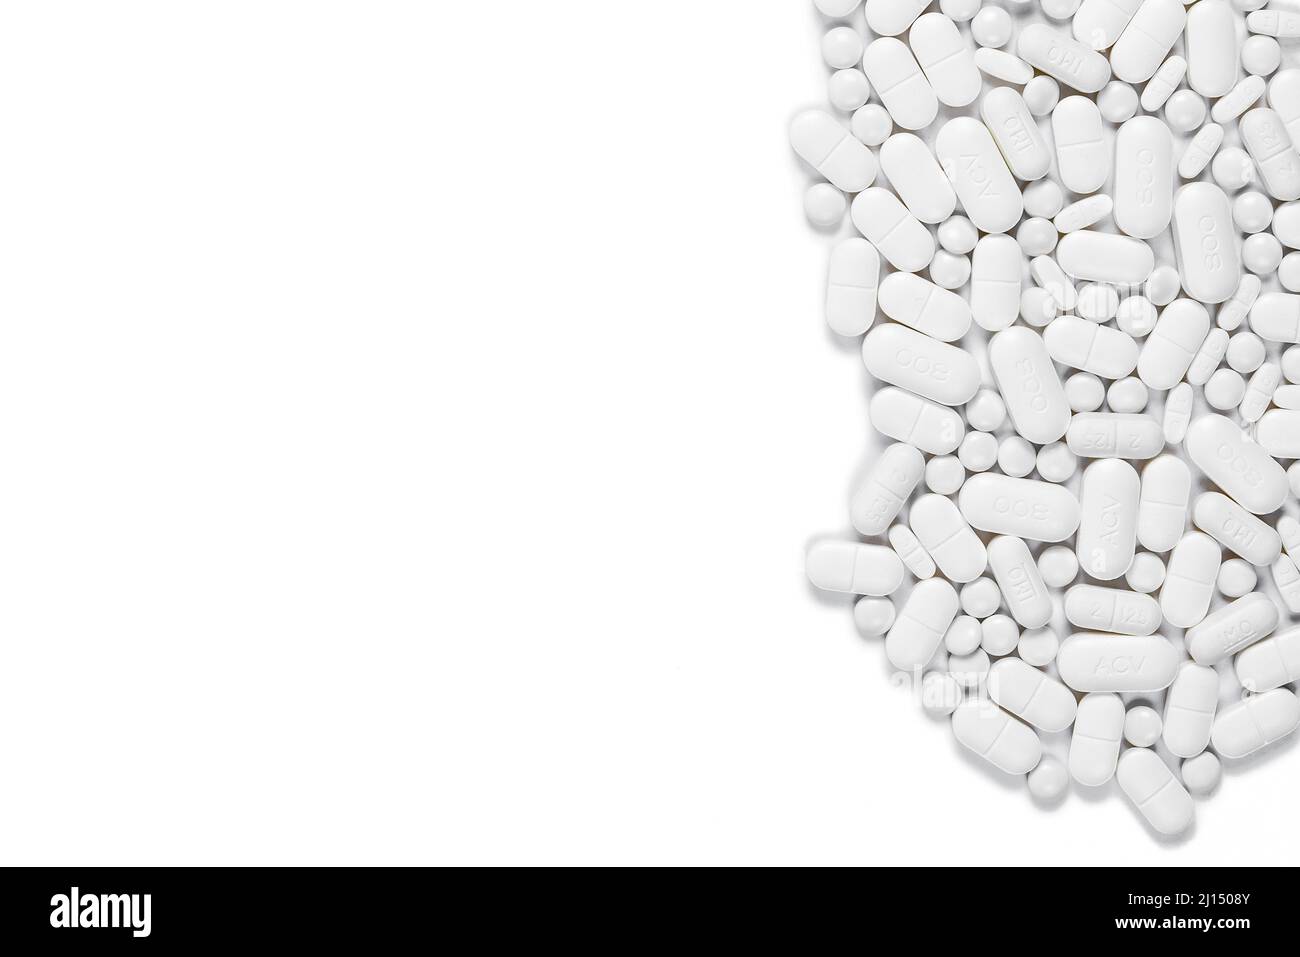 Auswahl von Pillen und Tabletten auf weißem Hintergrund, Platz für Kopien - Prophylaxe-Pillen für Krebspatienten Stockfoto